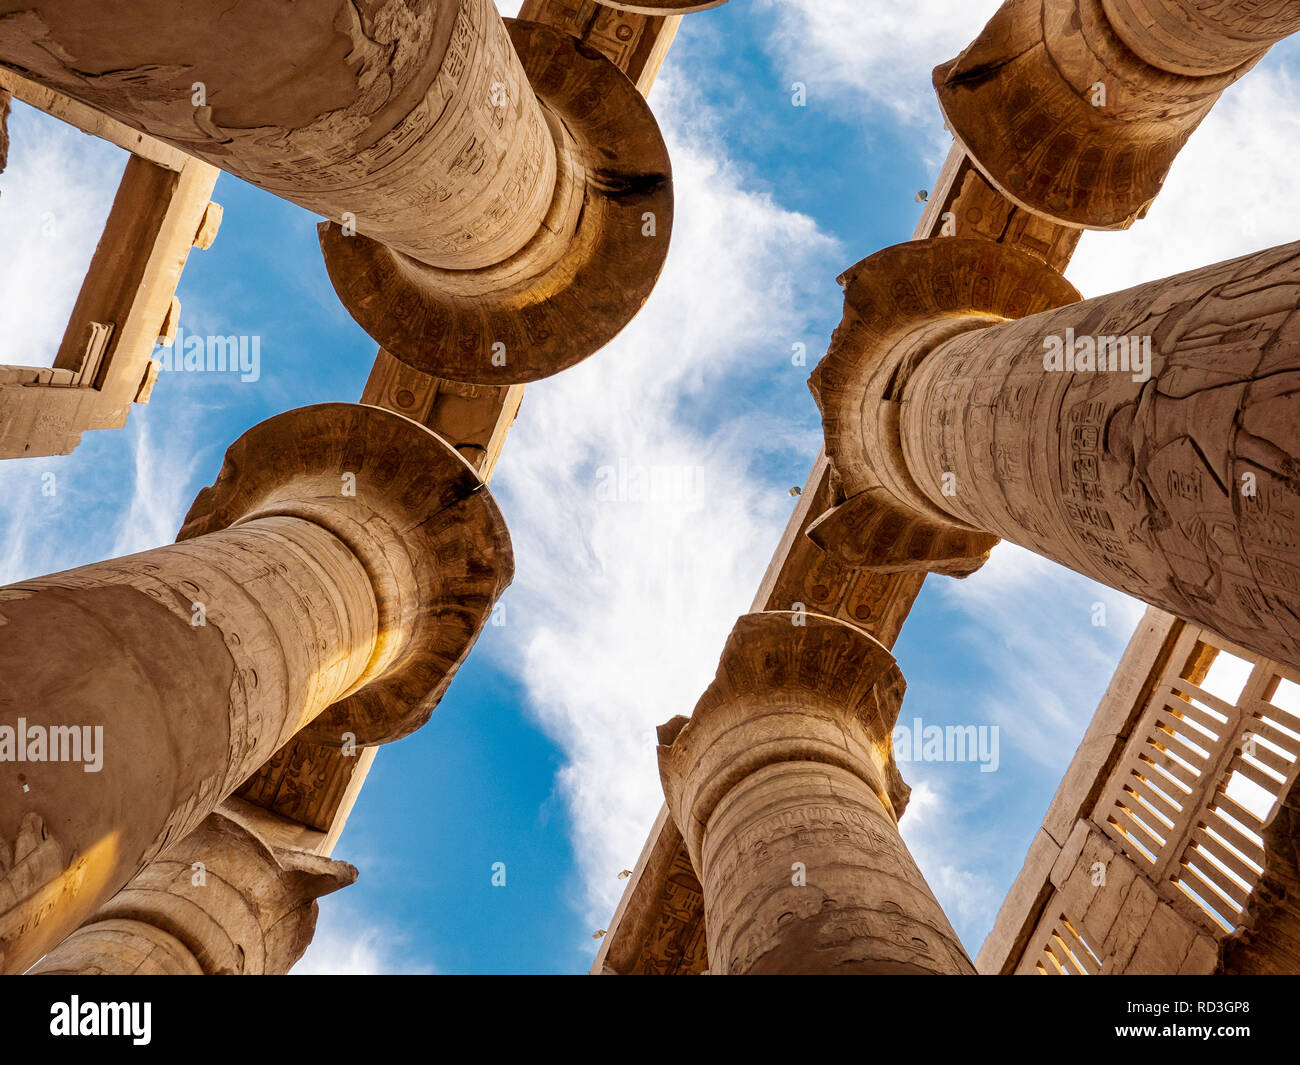 Las antiguas ruinas del templo de Karnak en Egipto, Luxor. Foto de stock